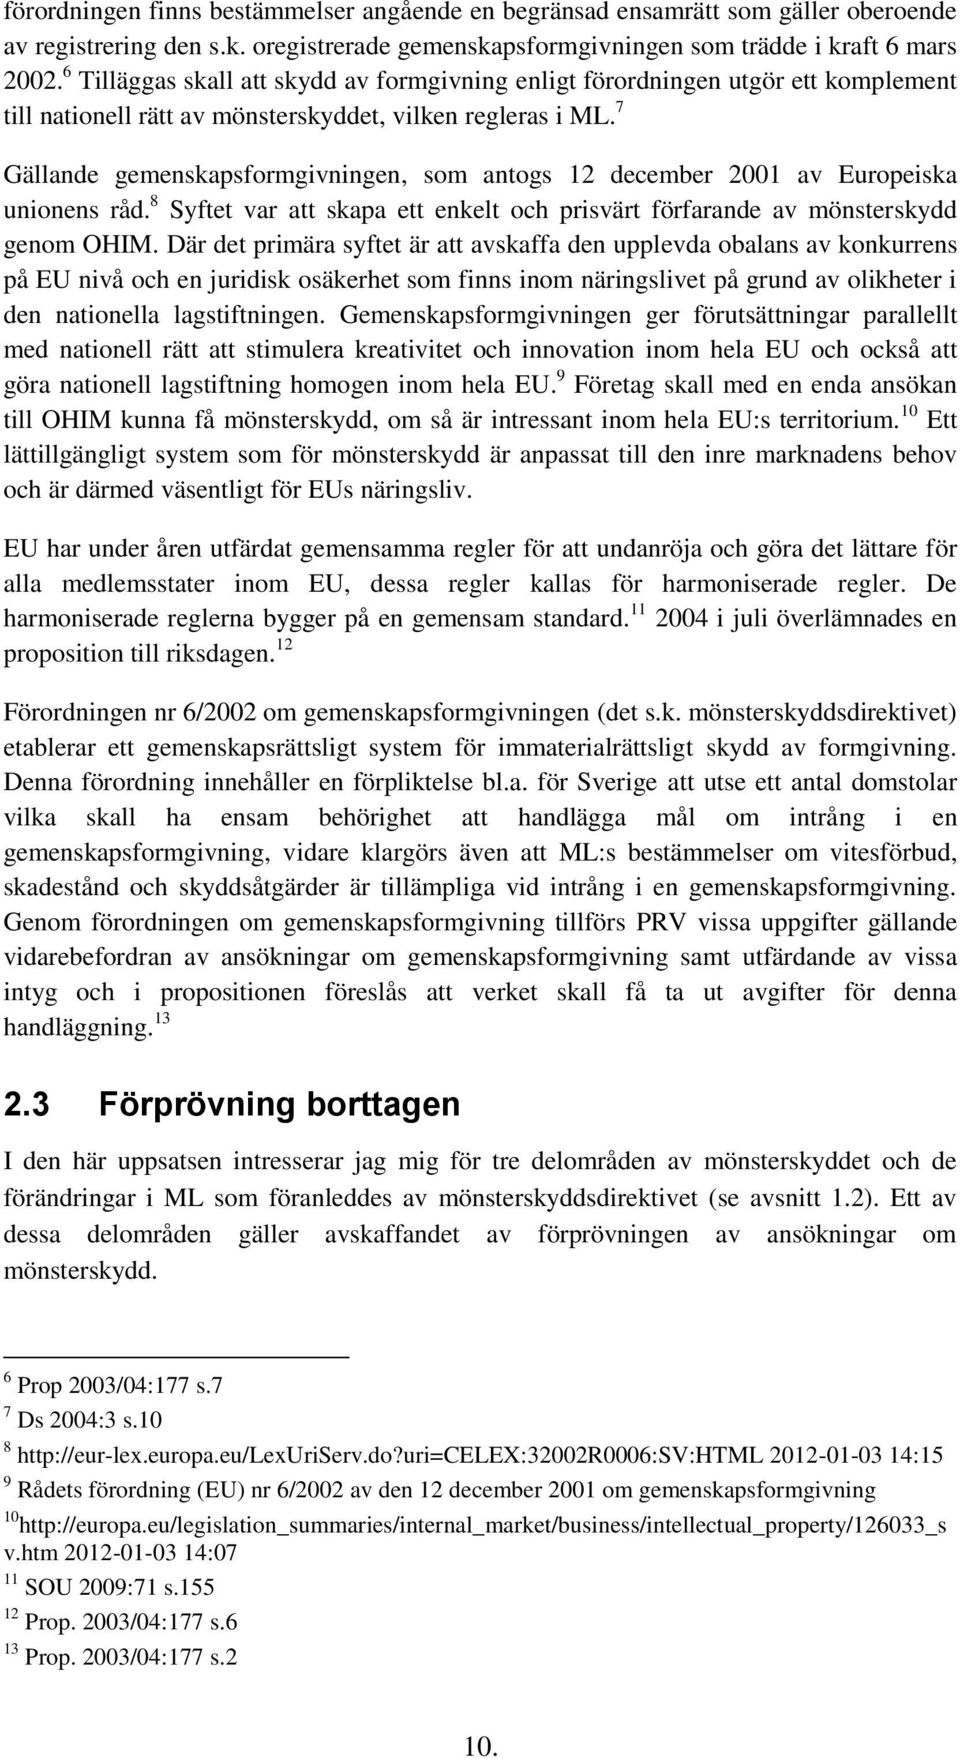 7 Gällande gemenskapsformgivningen, som antogs 12 december 2001 av Europeiska unionens råd. 8 Syftet var att skapa ett enkelt och prisvärt förfarande av mönsterskydd genom OHIM.